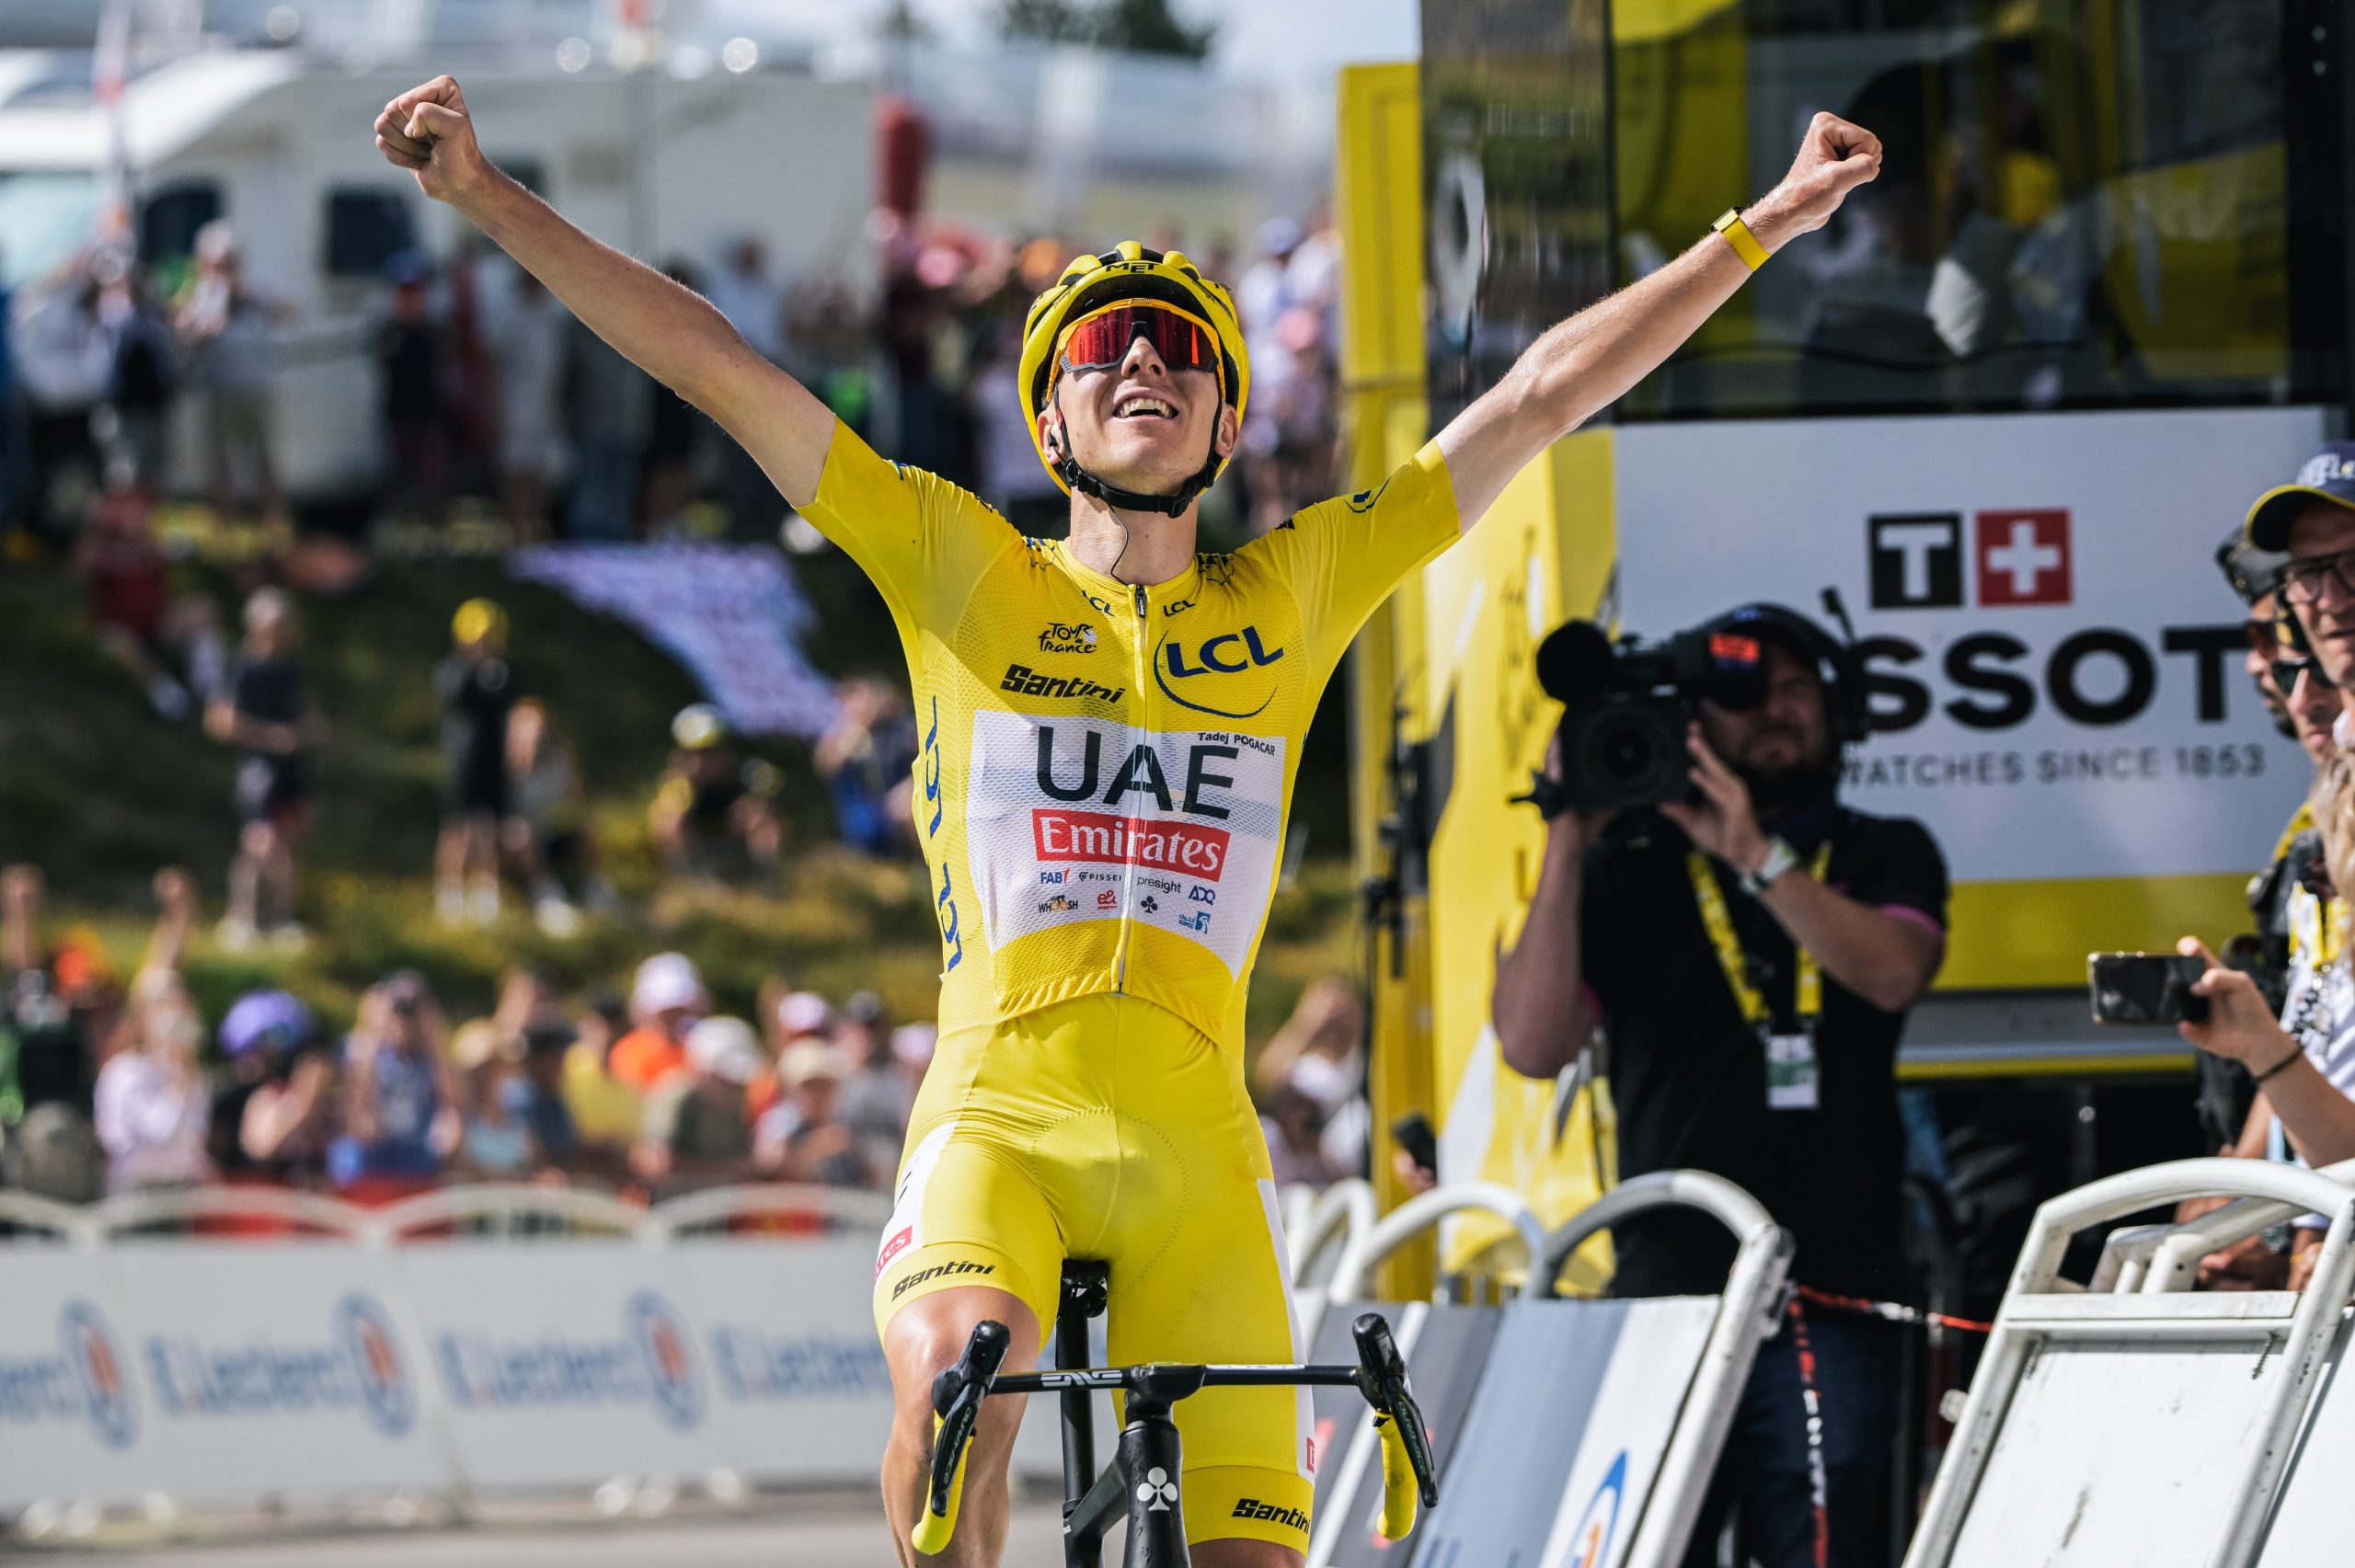 Tour de Francia: Pogacar intratable, repite victoria y sigue líder.